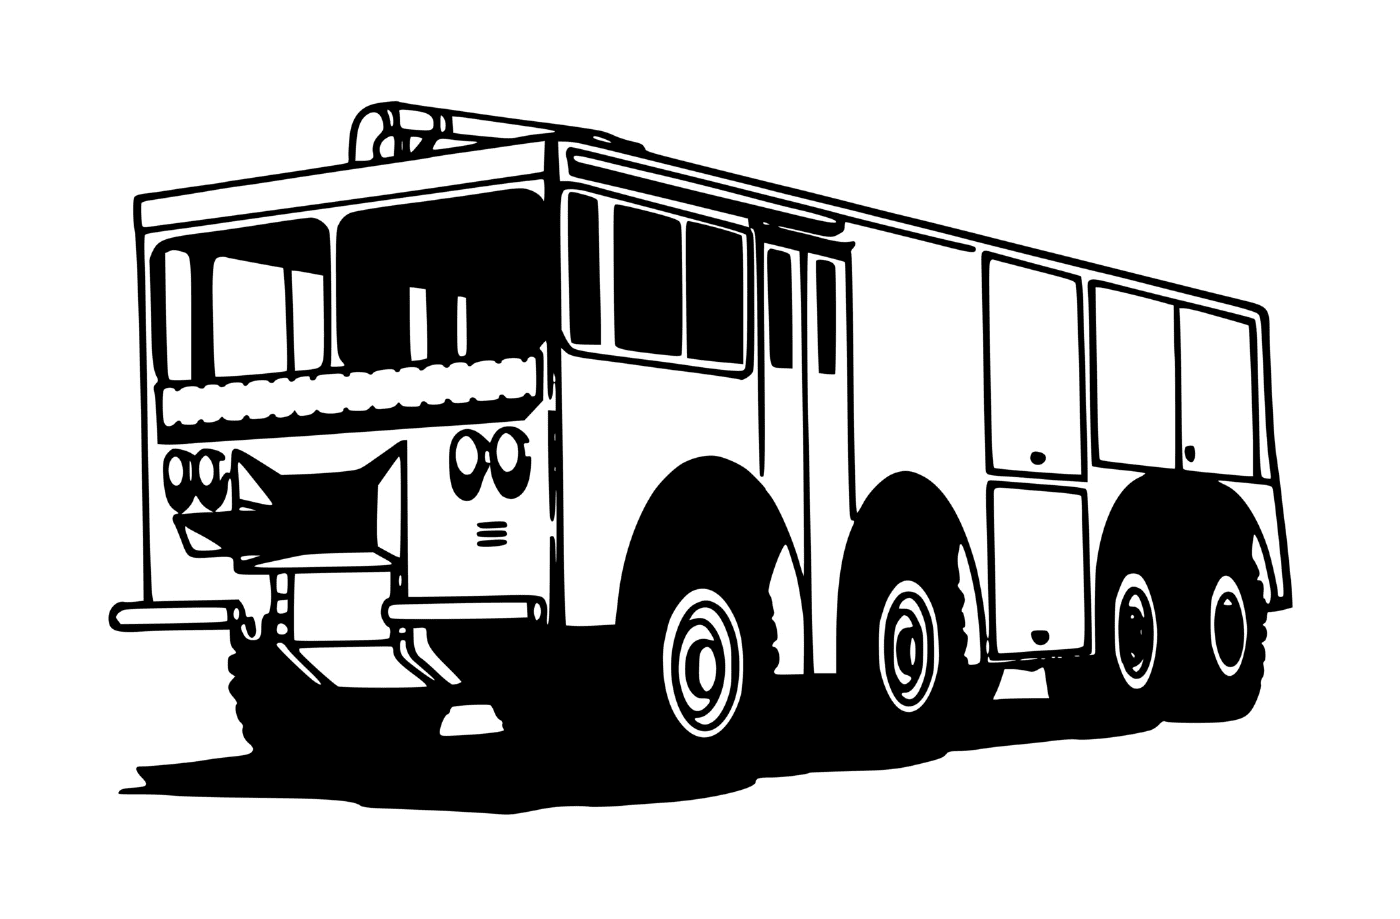  Feuerwehrwagen in Betrieb 